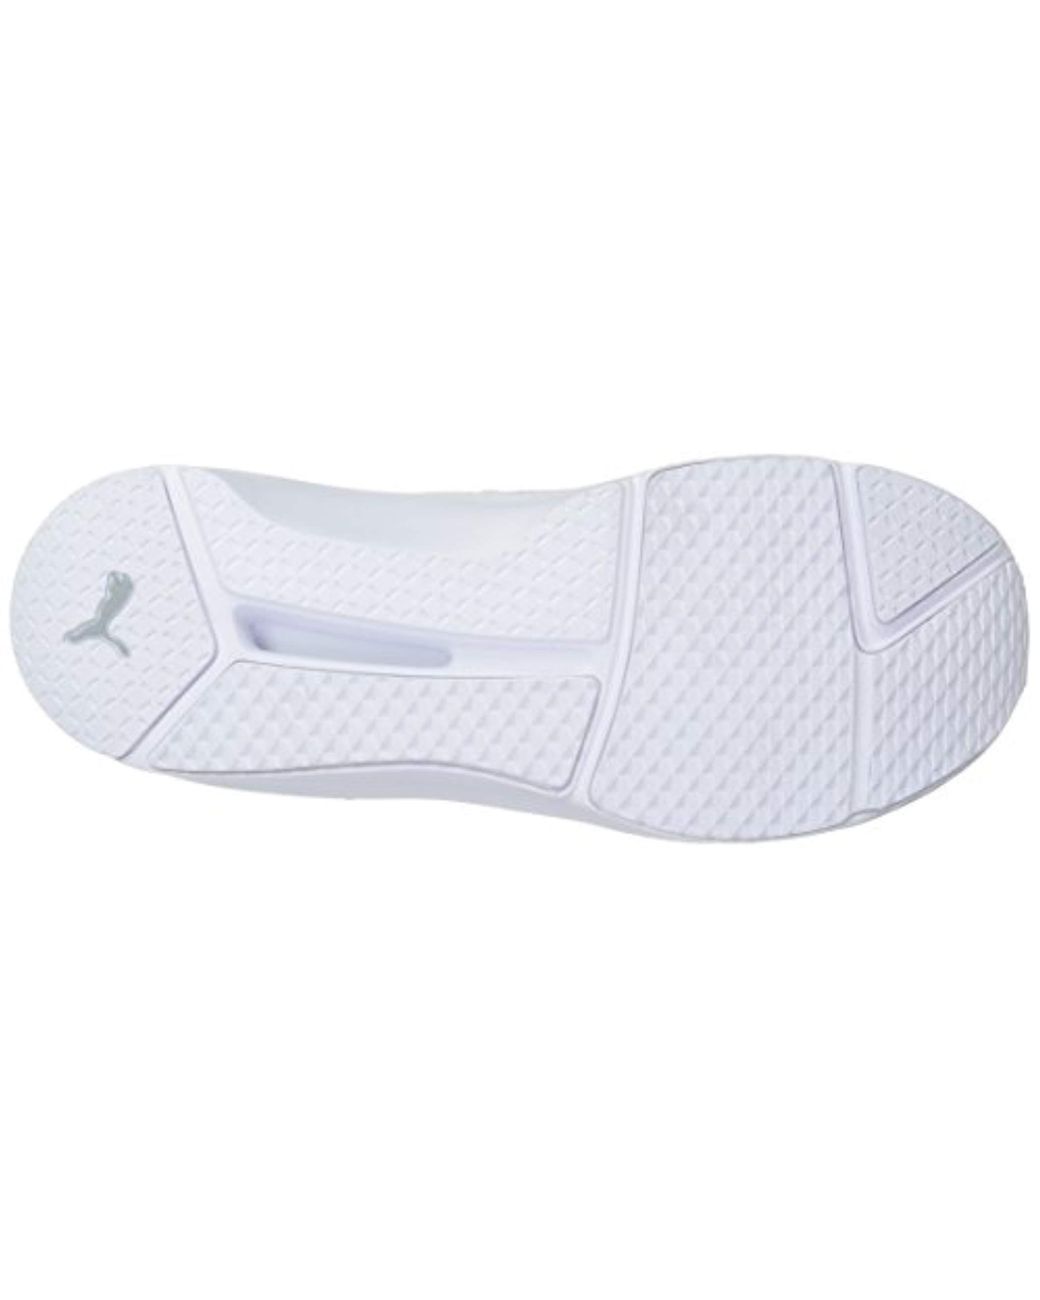 PUMA Synthetic Fierce Strap Swan Wn's Cross-trainer Shoe in White | Lyst